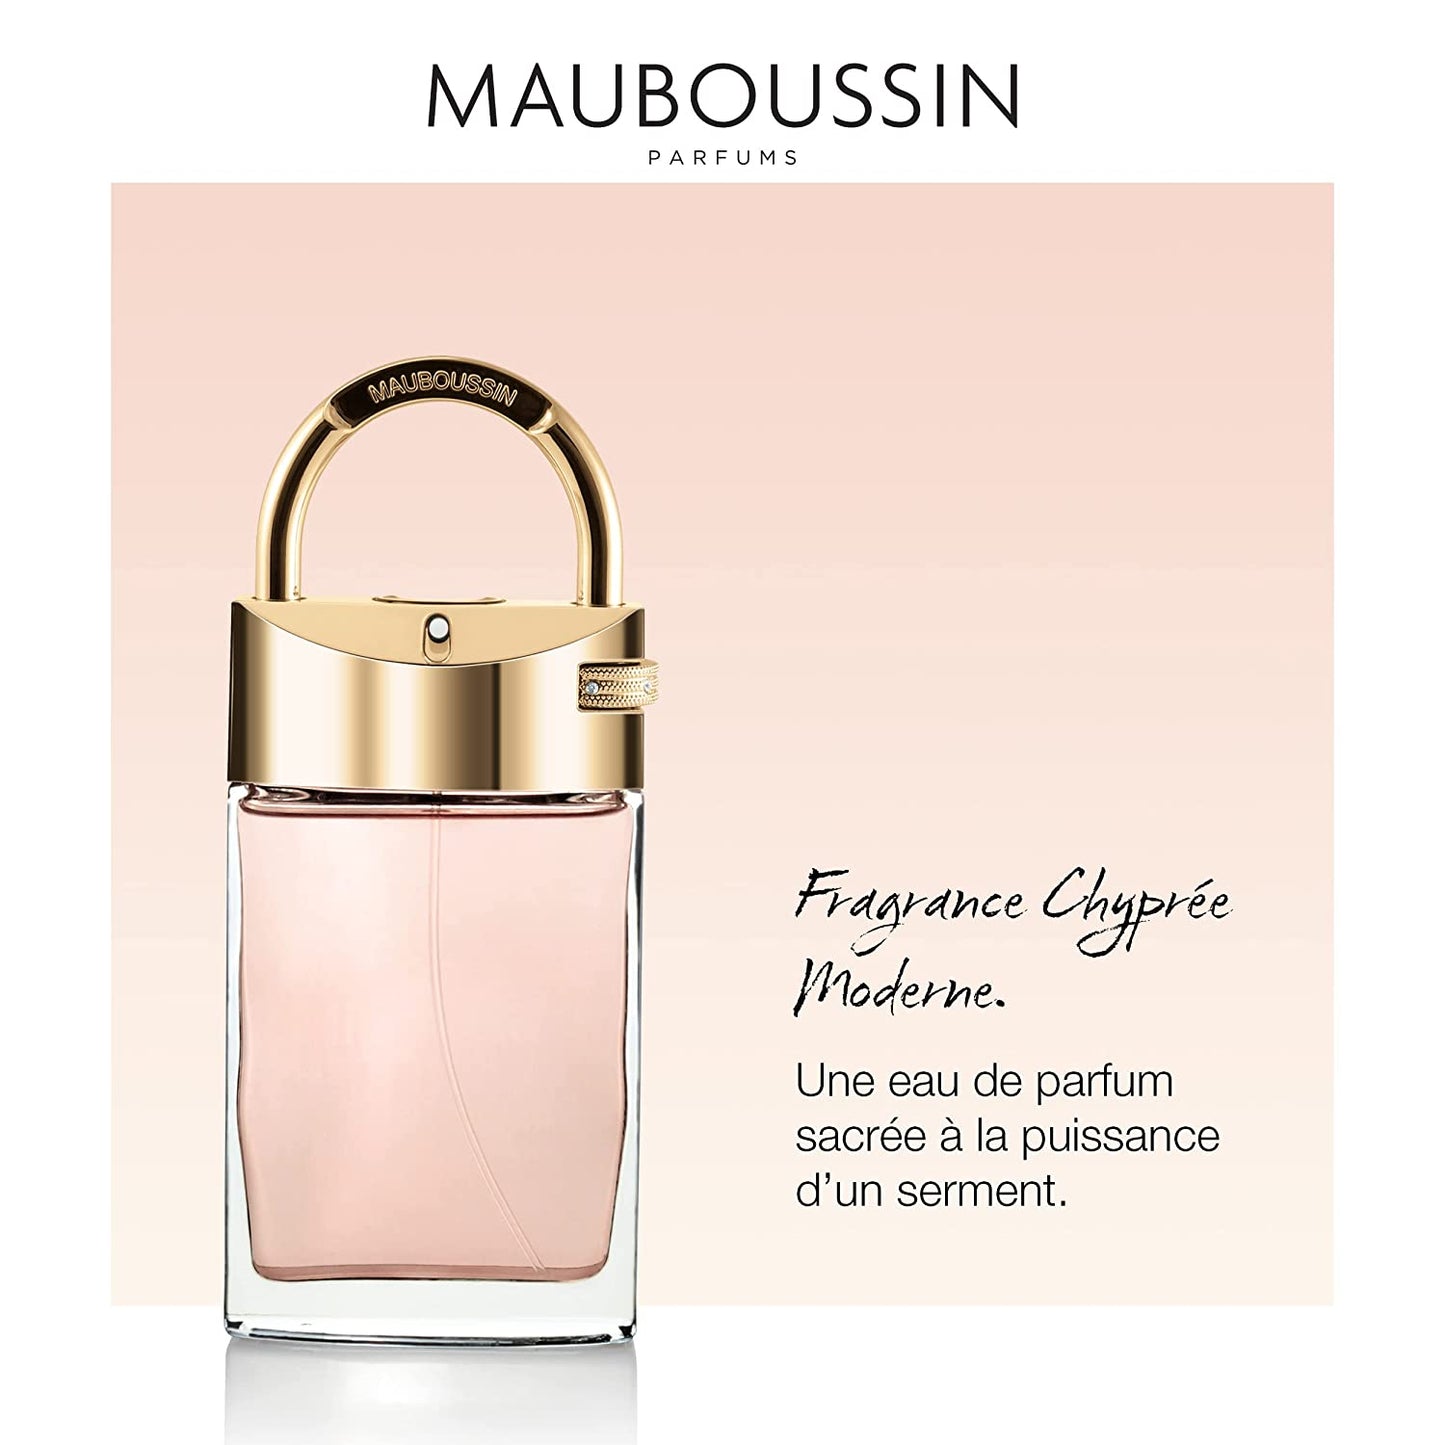 Mauboussin - Promise Me 90ml (3 Fl Oz) - Eau de Parfum for Women - Chypre & Modern Scents